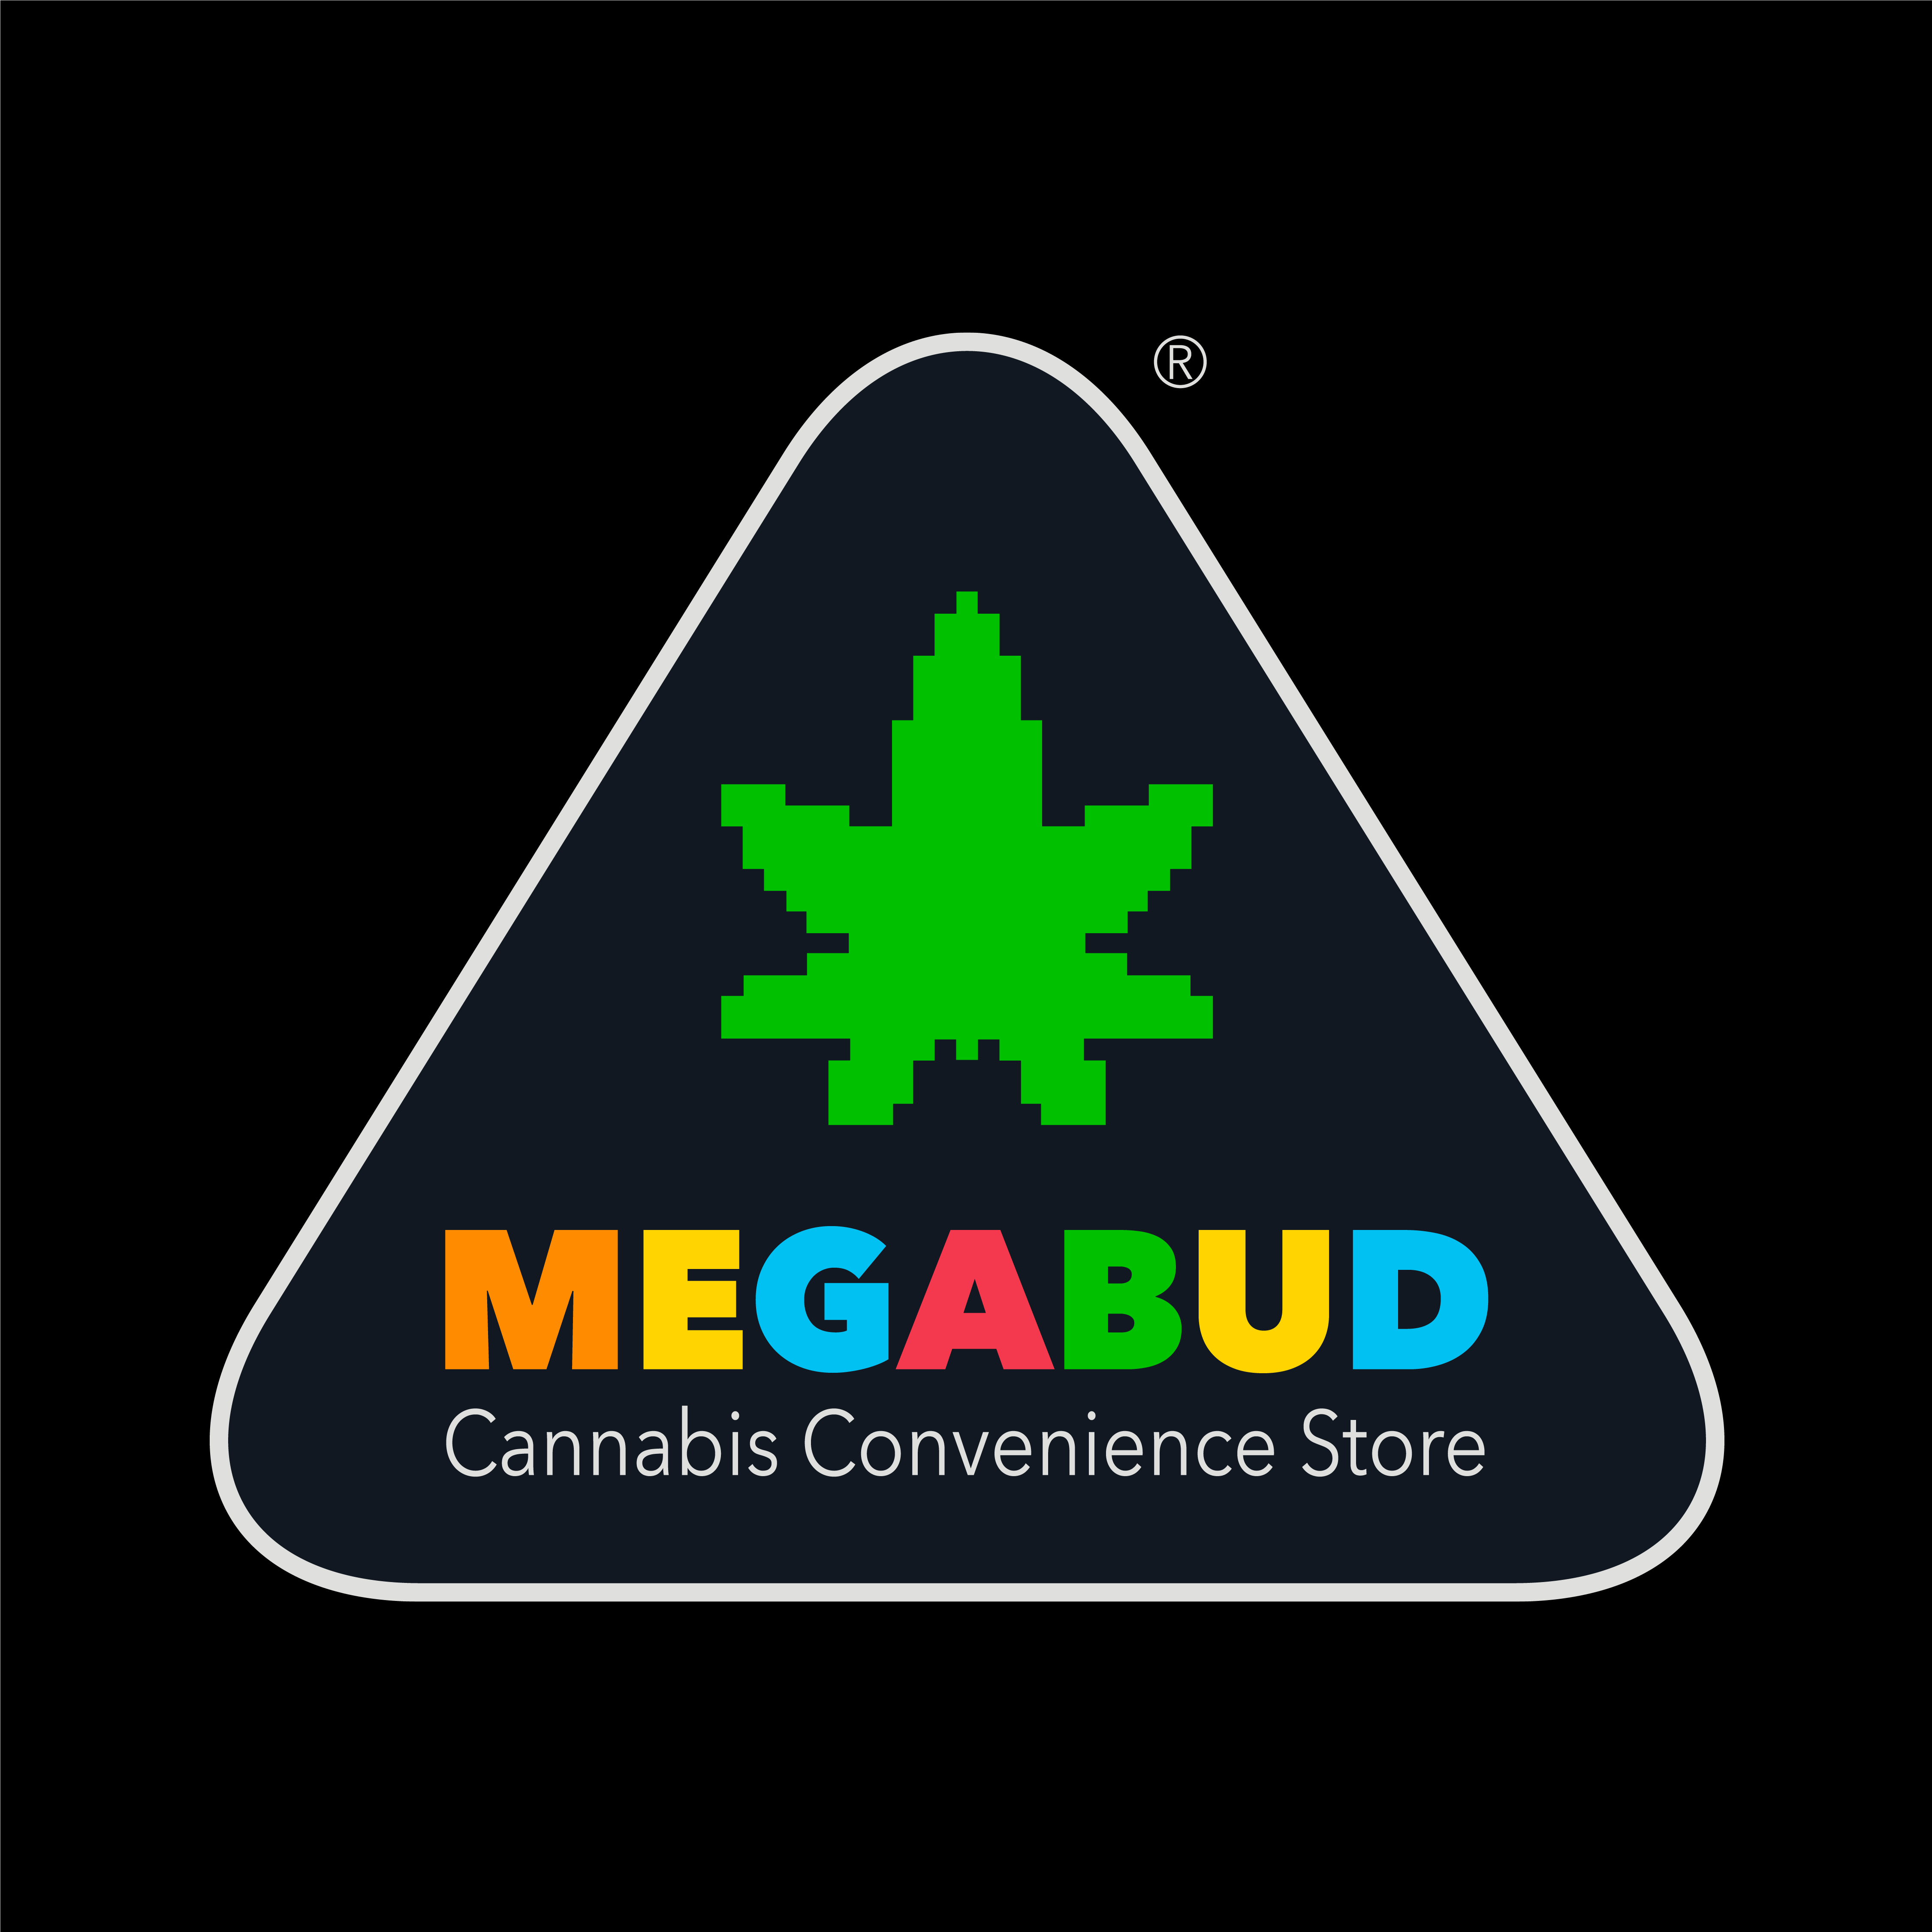 Megabud